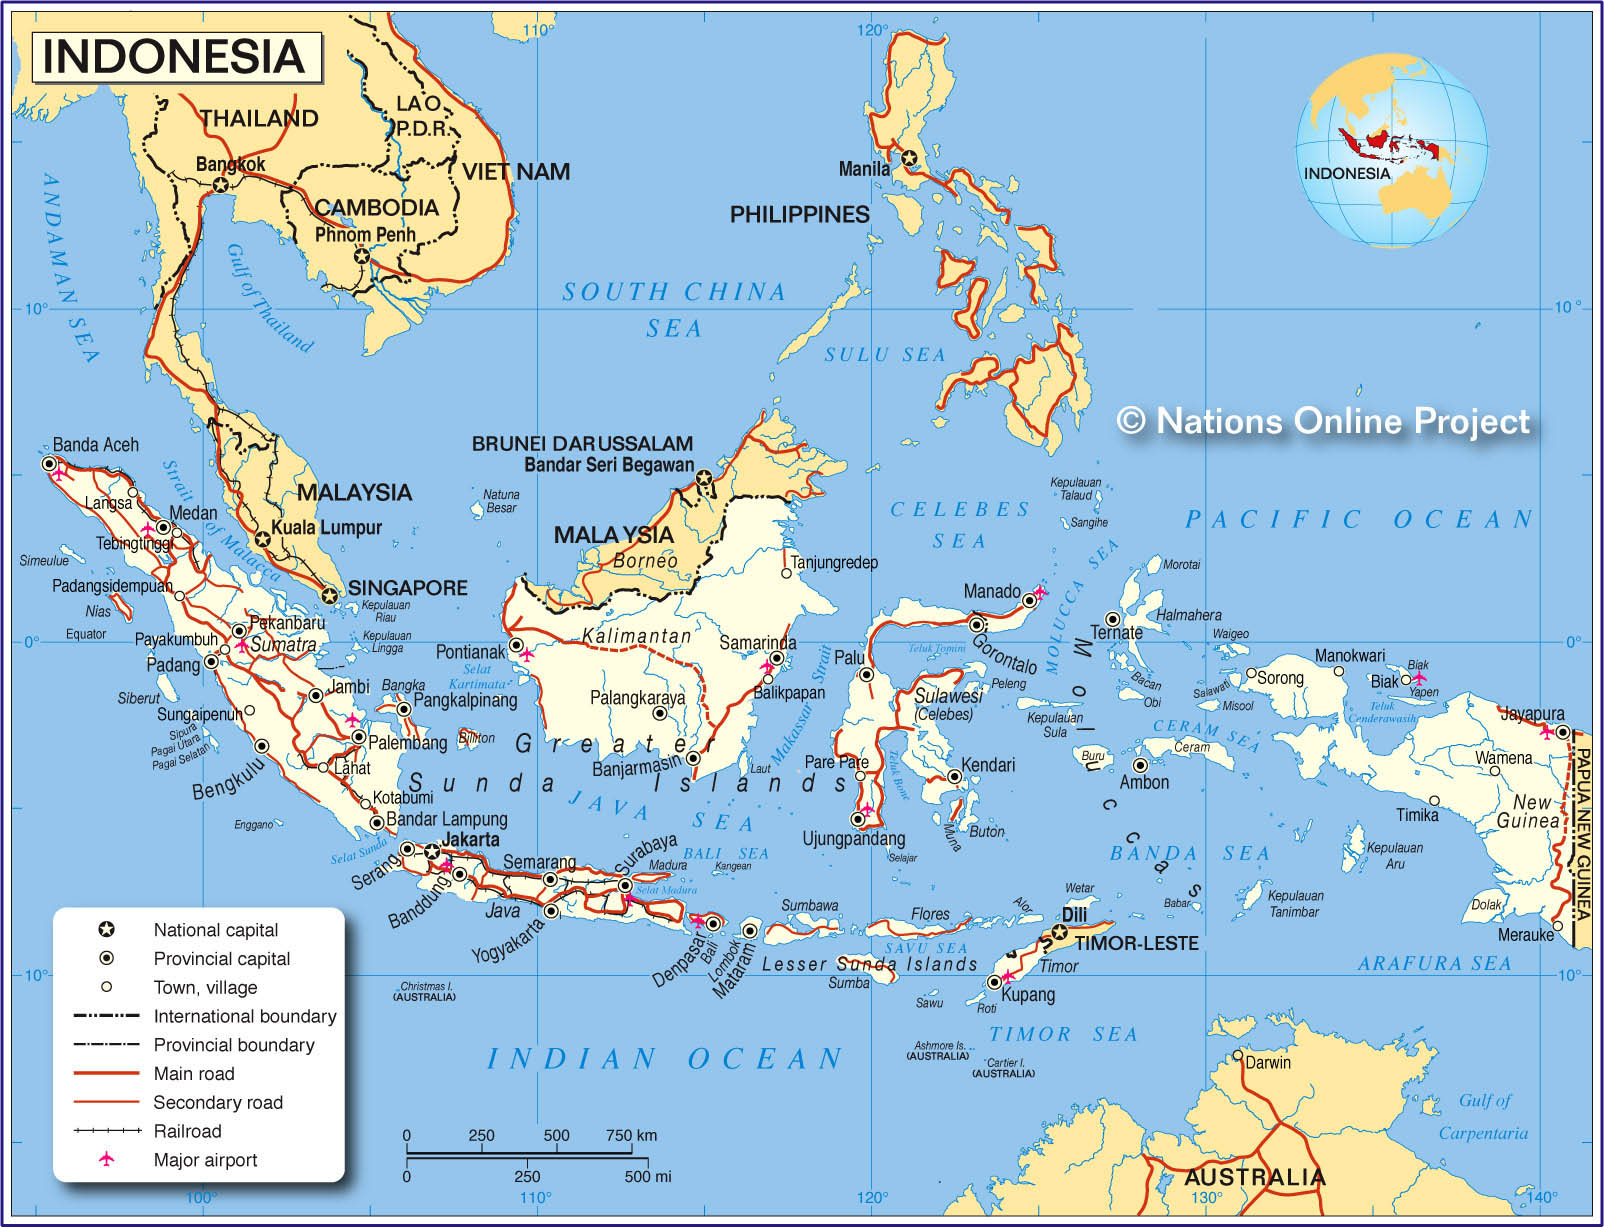 Bản đồ Indonesia năm 2024: Trong 5 năm tới, Indonesia sẽ đạt được những bước tiến đáng kể về kinh tế và phát triển đô thị. Các bản đồ mới nhất sẽ giúp bạn cập nhật đầy đủ những thông tin về cơ sở hạ tầng, khu đô thị mới và các công trình đang được xây dựng.